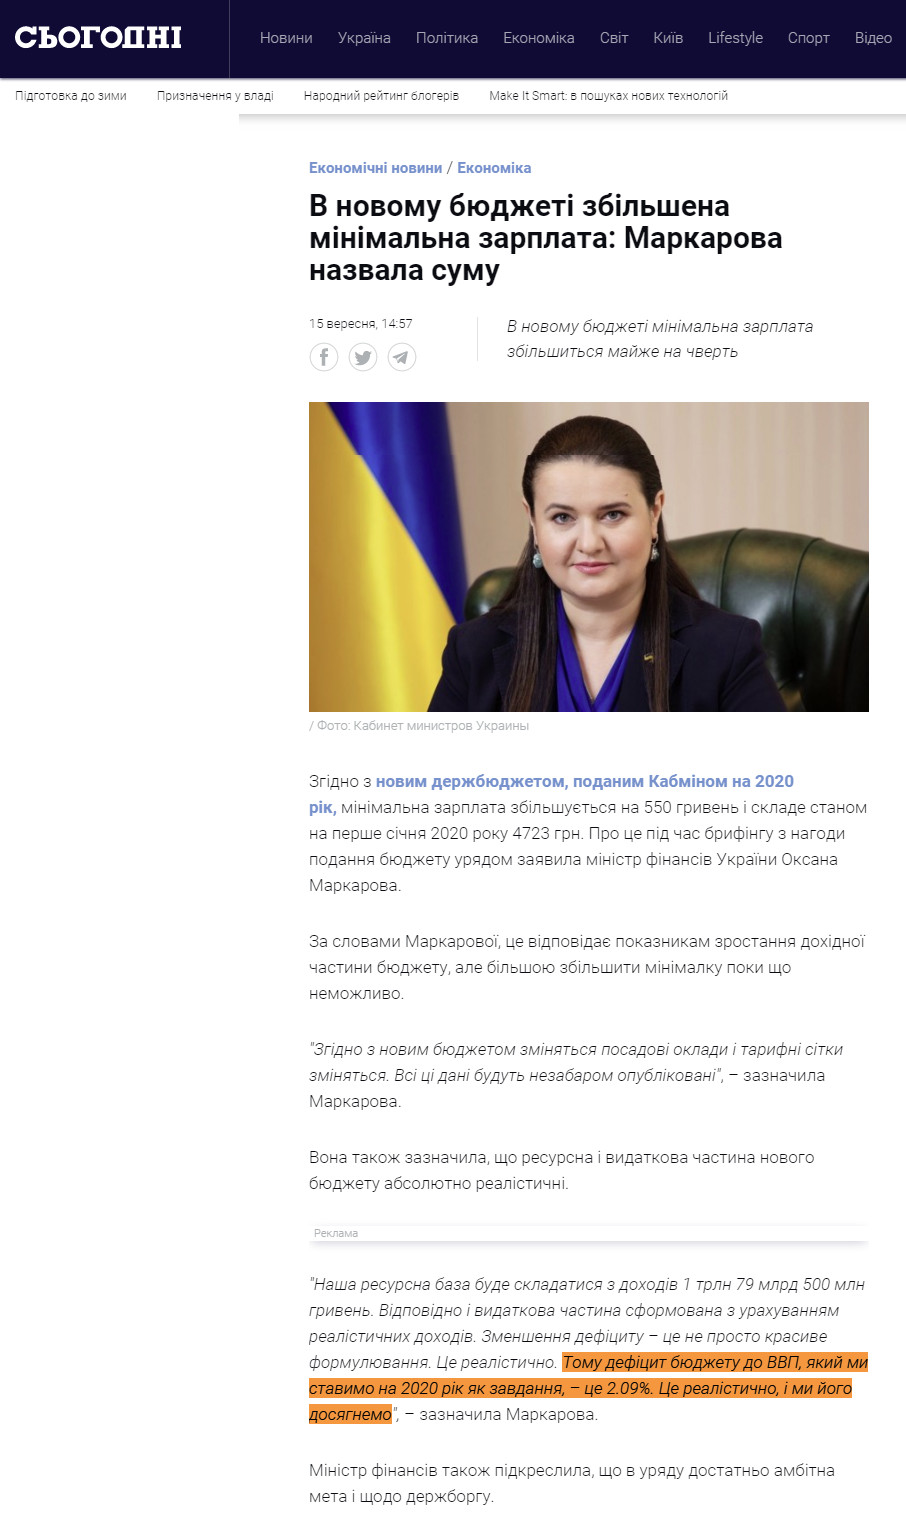 https://ukr.segodnya.ua/economics/enews/v-novom-byudzhete-uvelichena-minimalnaya-zrplata-markarova-nazvala-summu-1331246.html